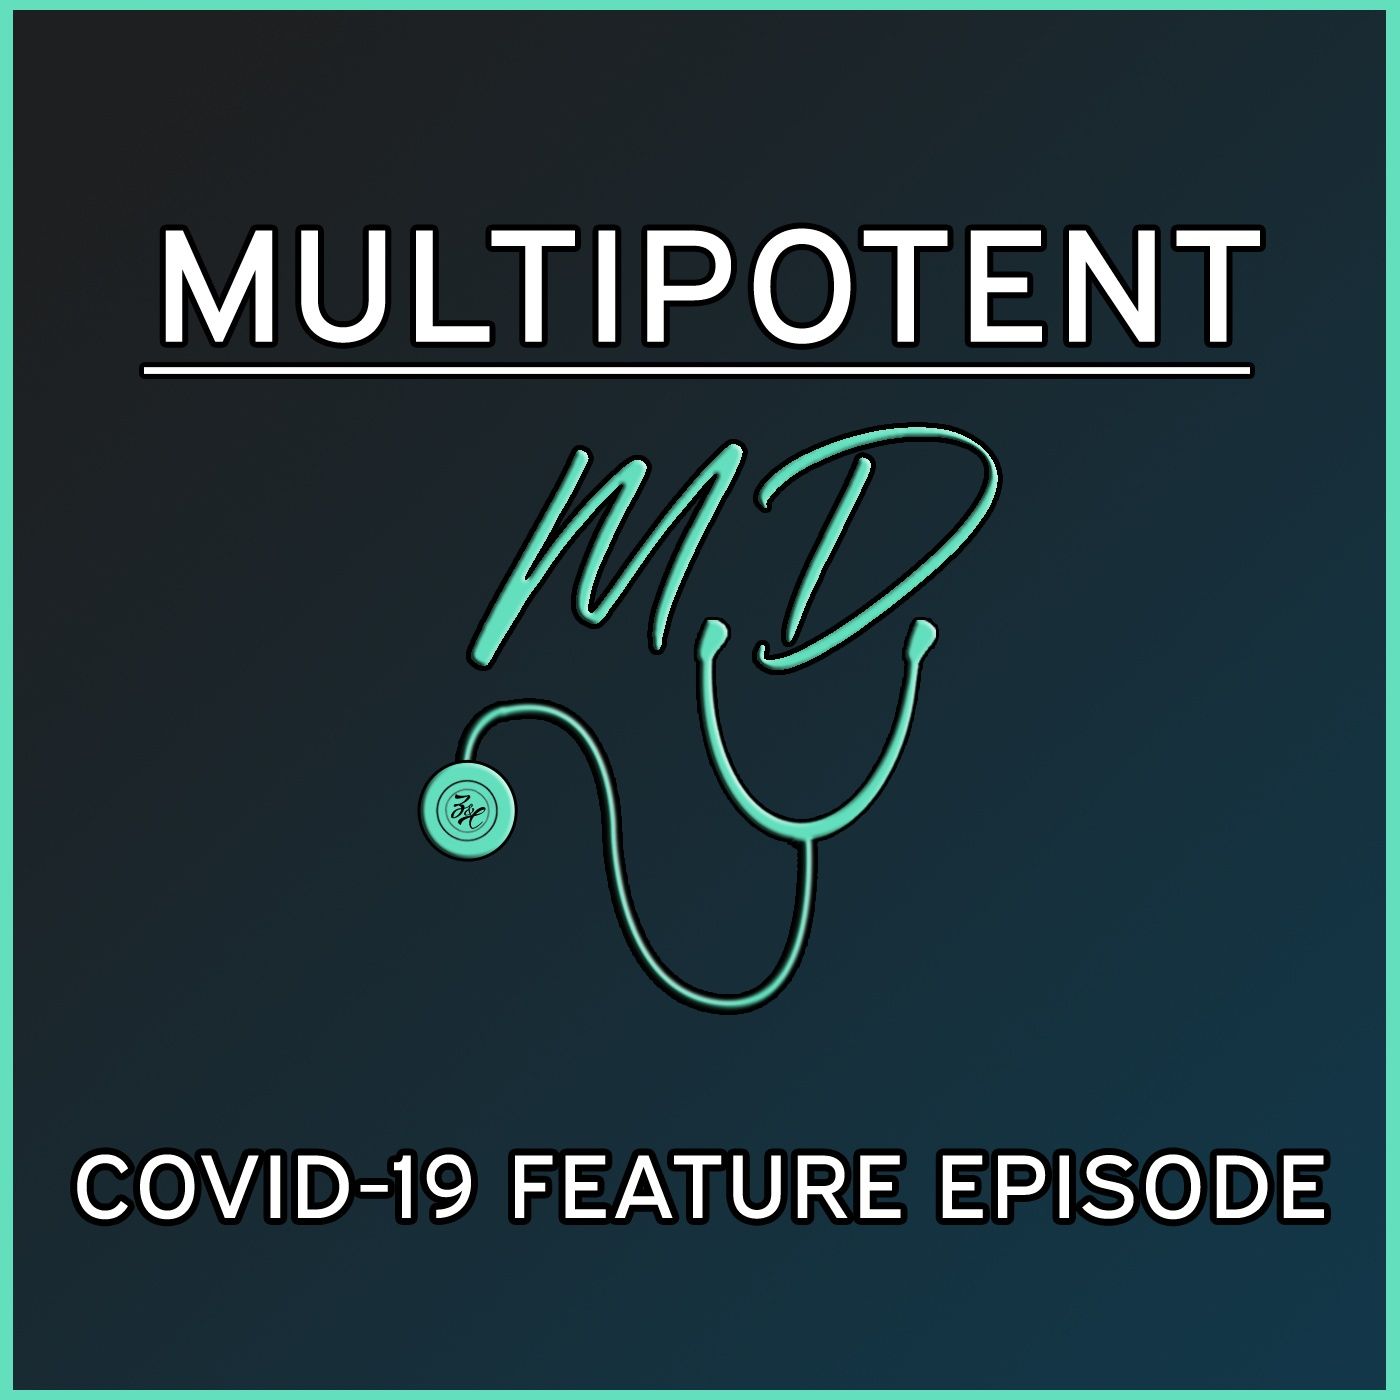 COVID-19 Feature Episode (Part 1)